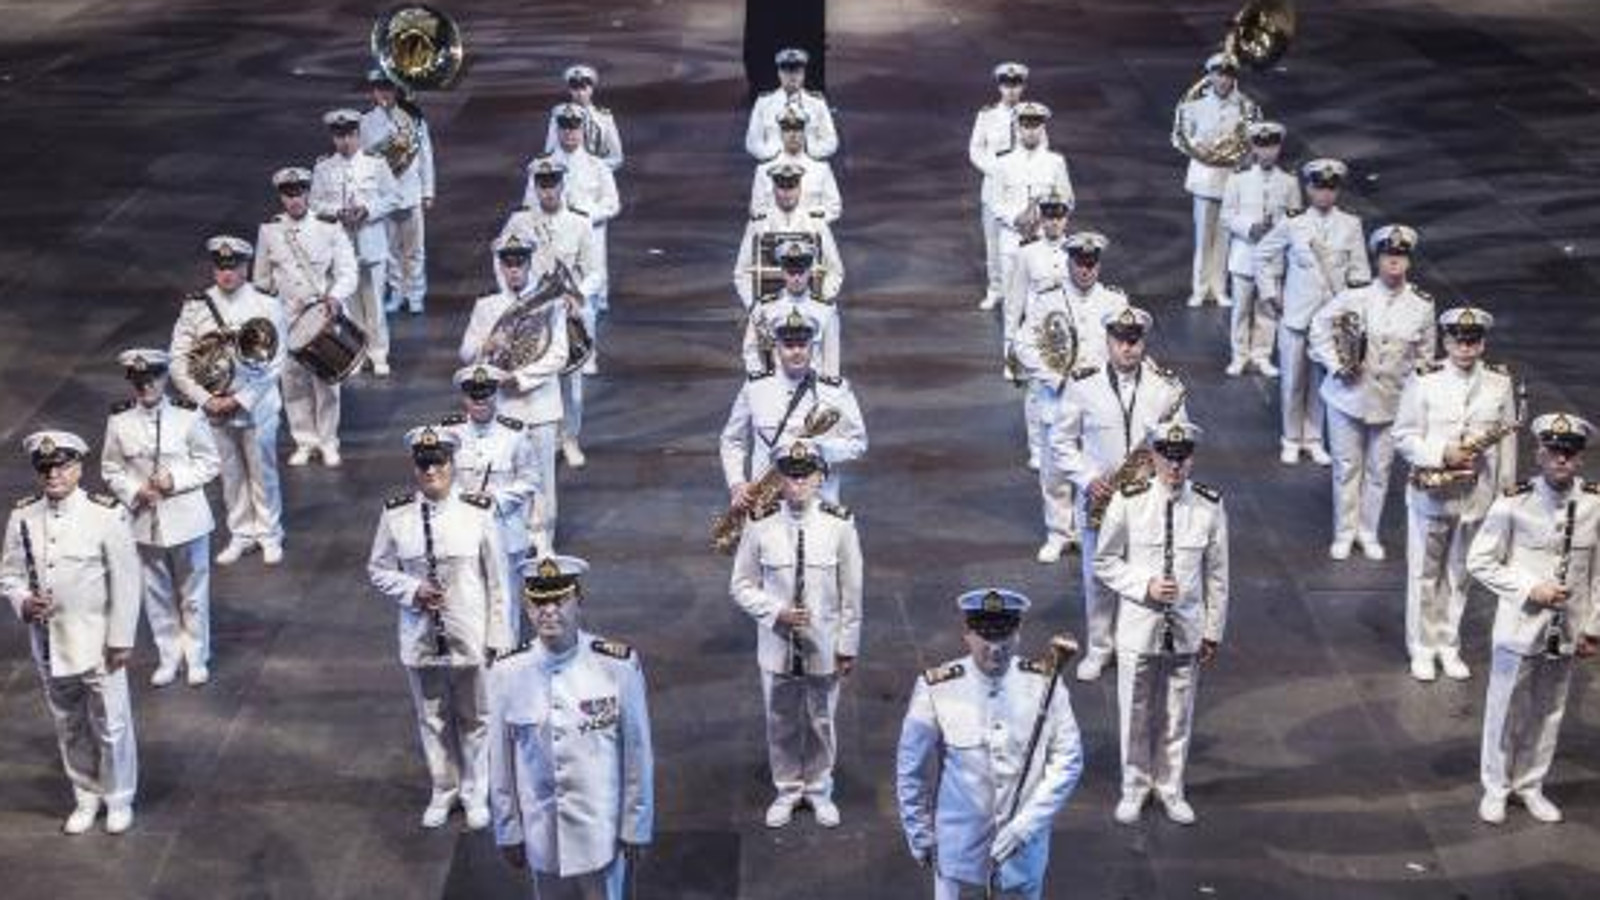 Kuvassa on Laivaston soittokunta valkoisissa puvuissa ja lakeissa seisomassa viidessä rivissä soittimet kädessään.  Kuva on otettu yläviistossa. Lattia on harmaa.